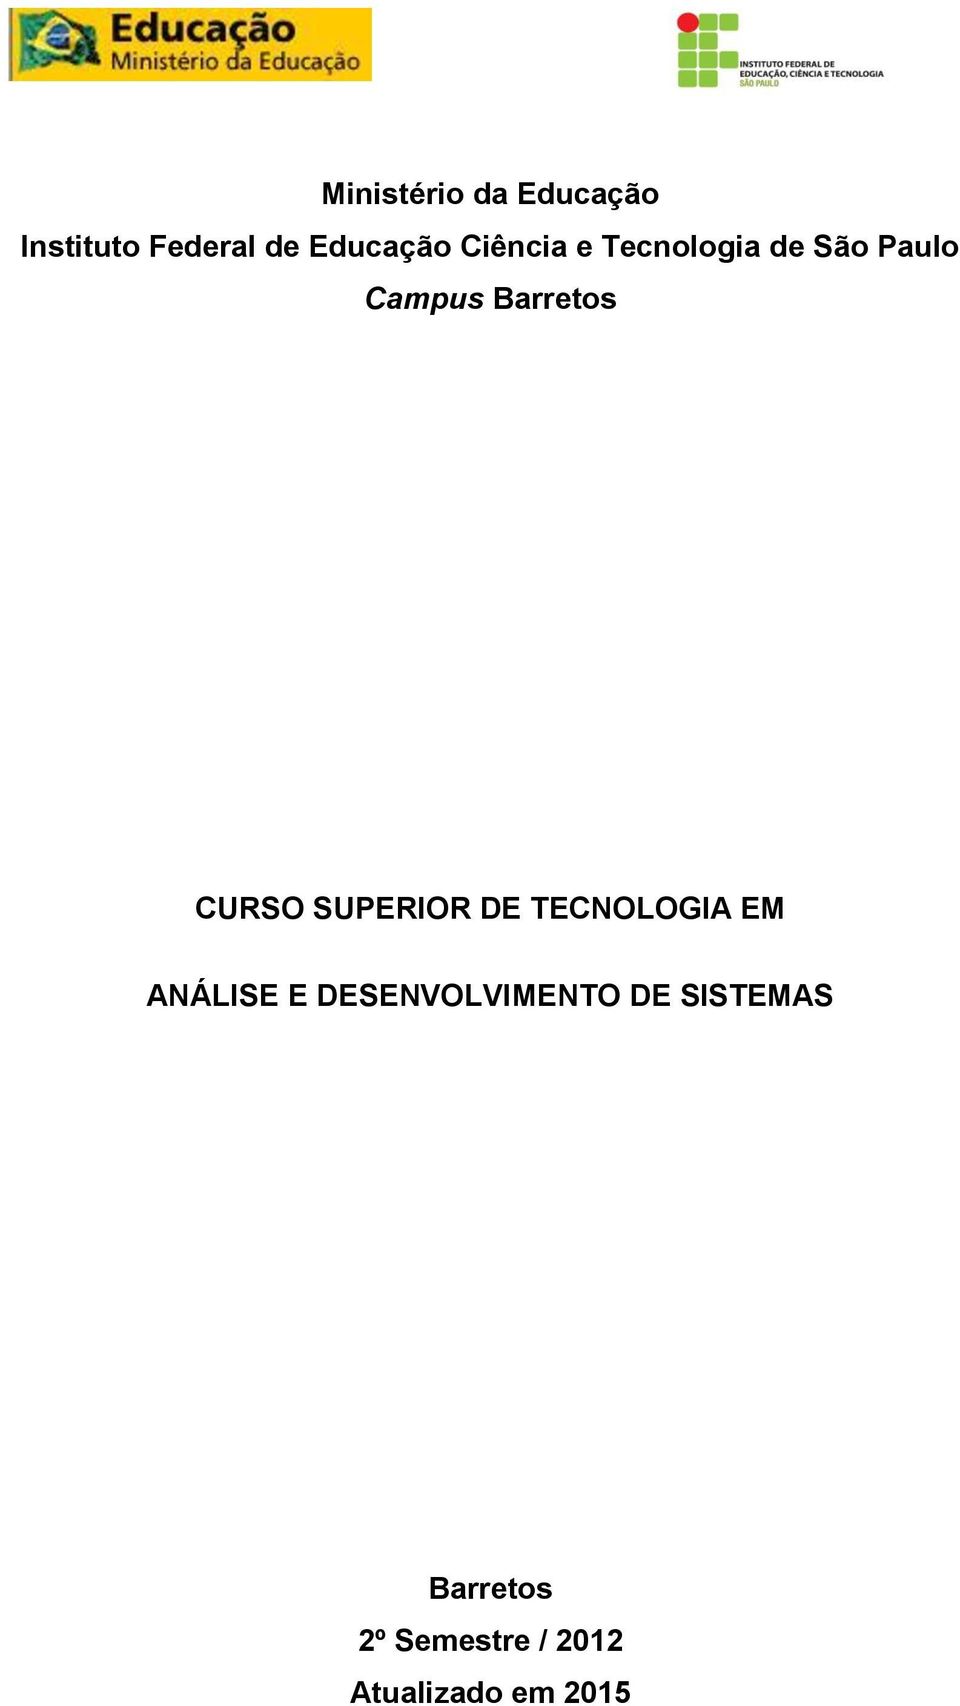 CURSO SUPERIOR DE TECNOLOGIA EM ANÁLISE E